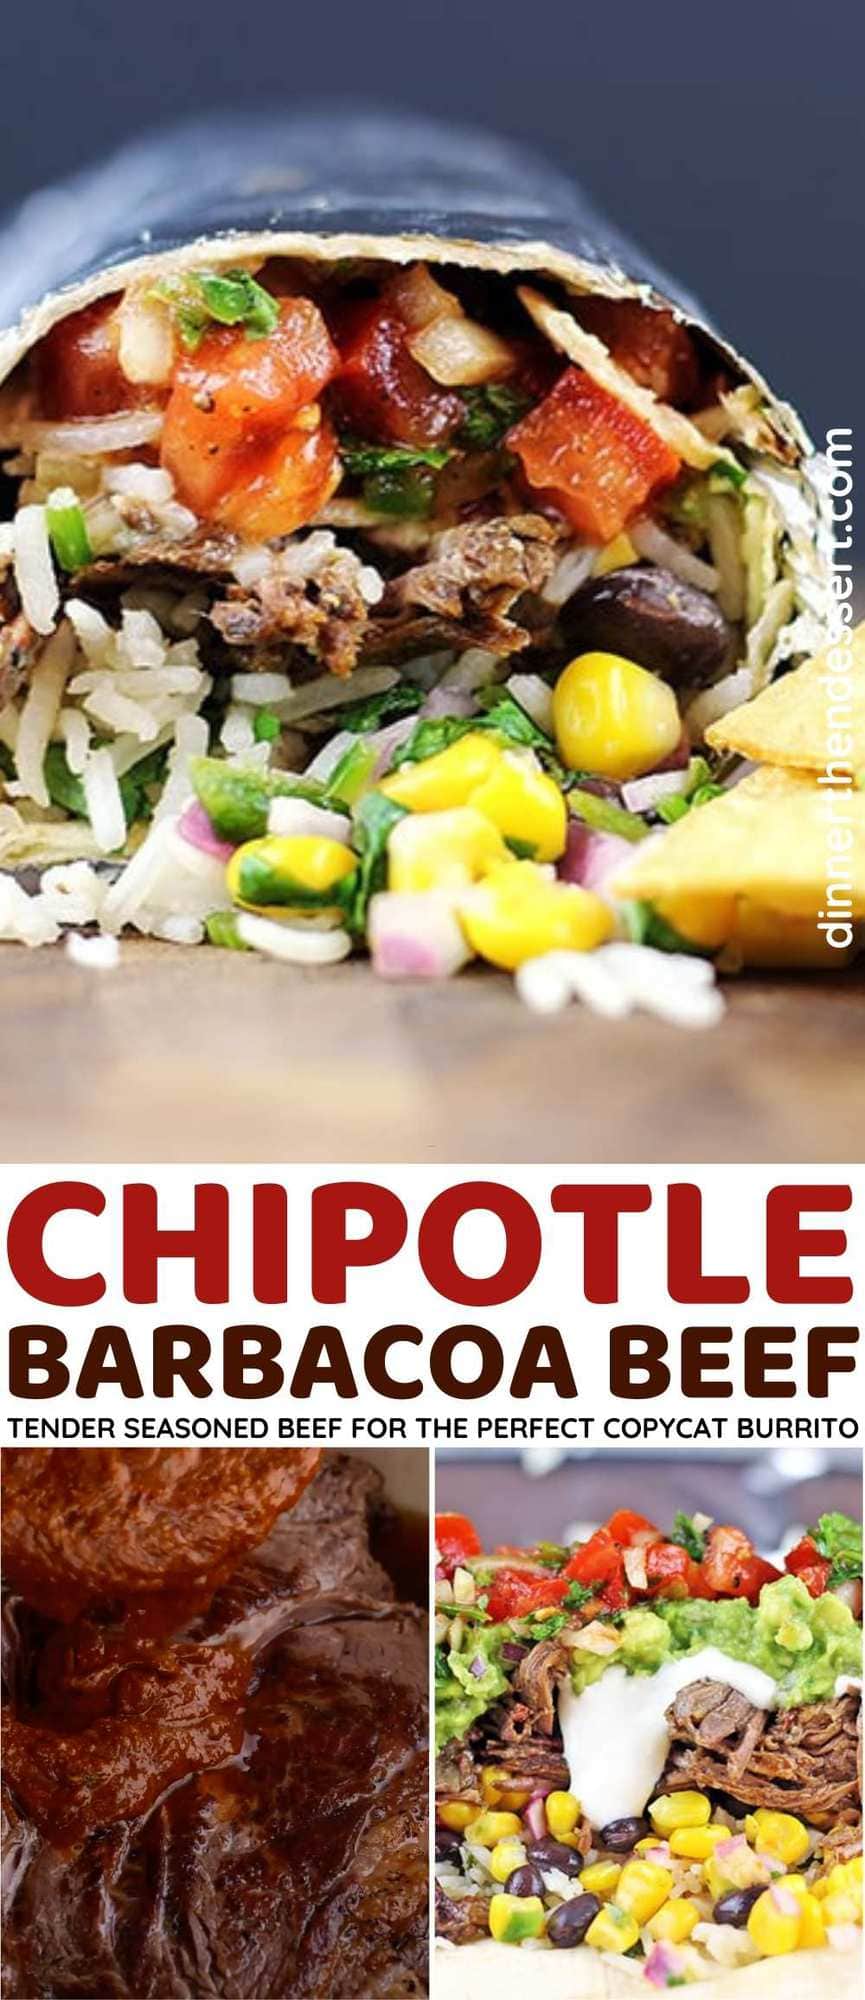 Chipotle Barbacoa Beef Burrito Collage